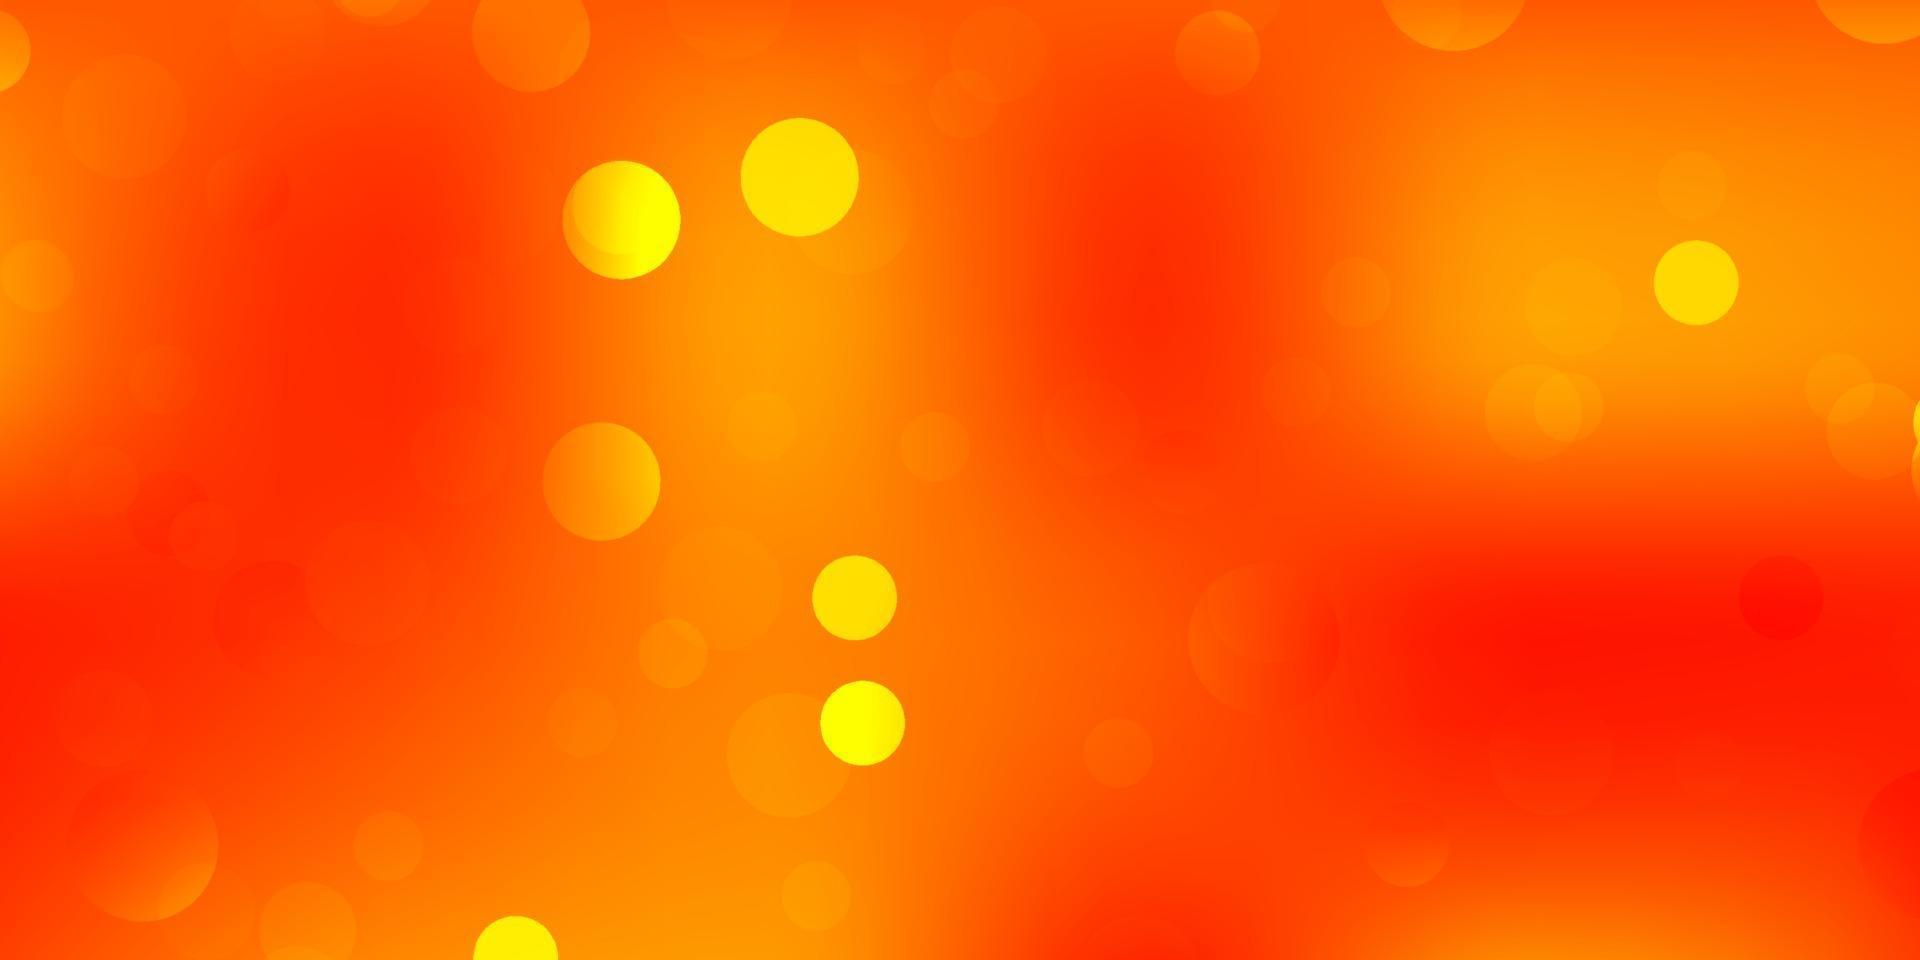 padrão de vetor laranja claro com formas abstratas.